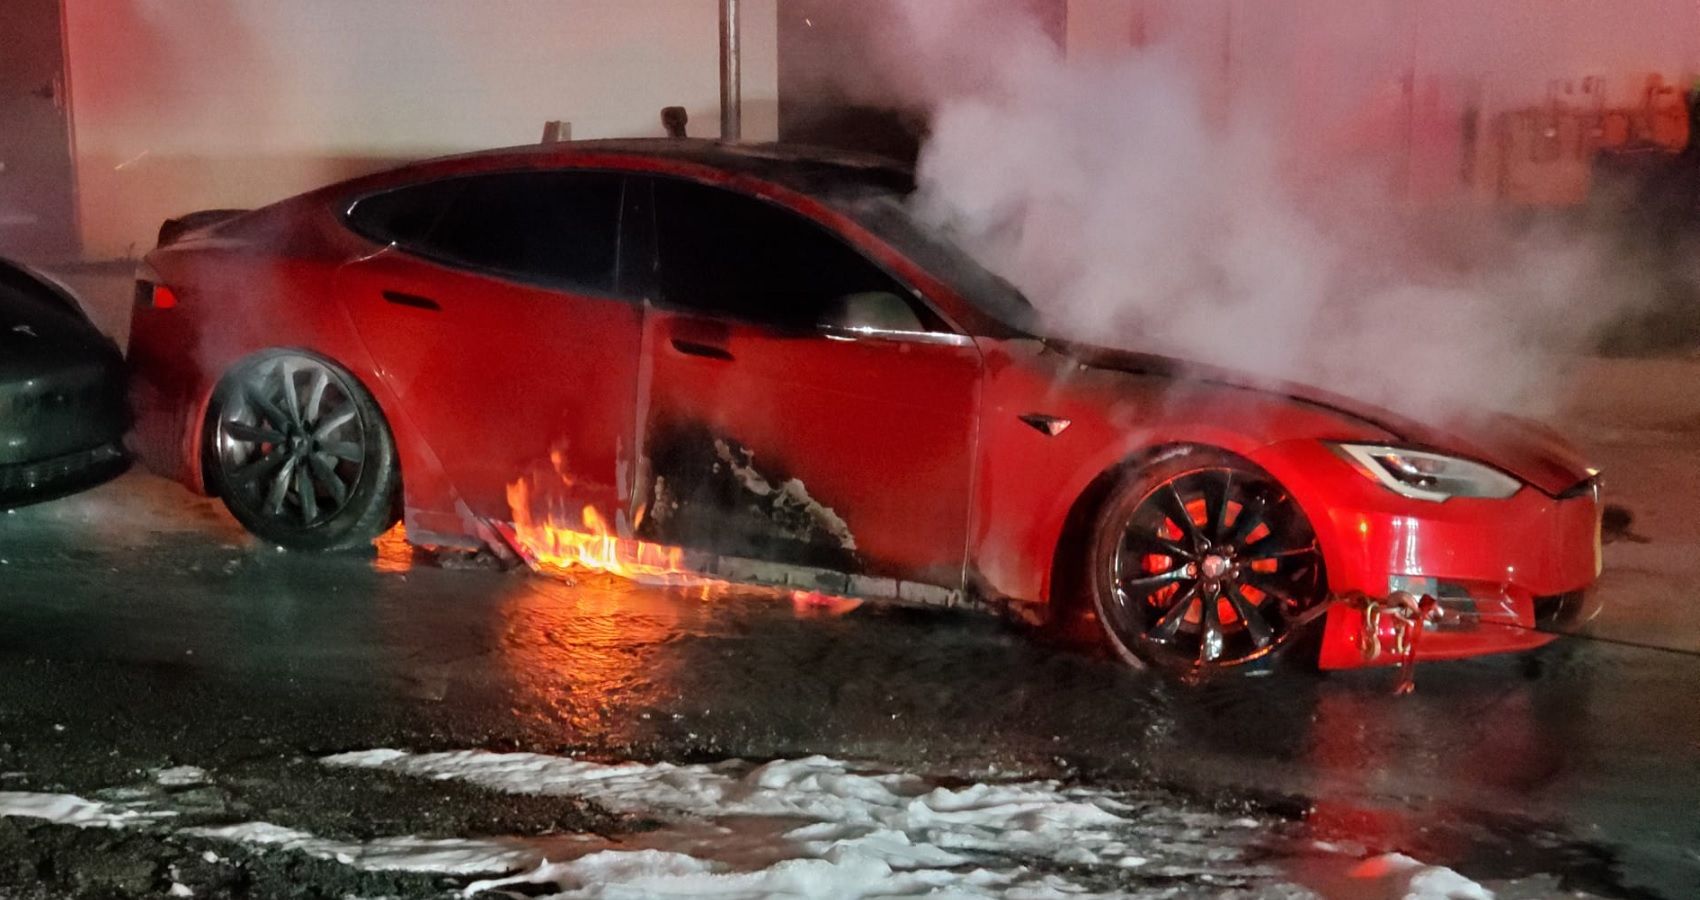 Red Tesla Model S on fire